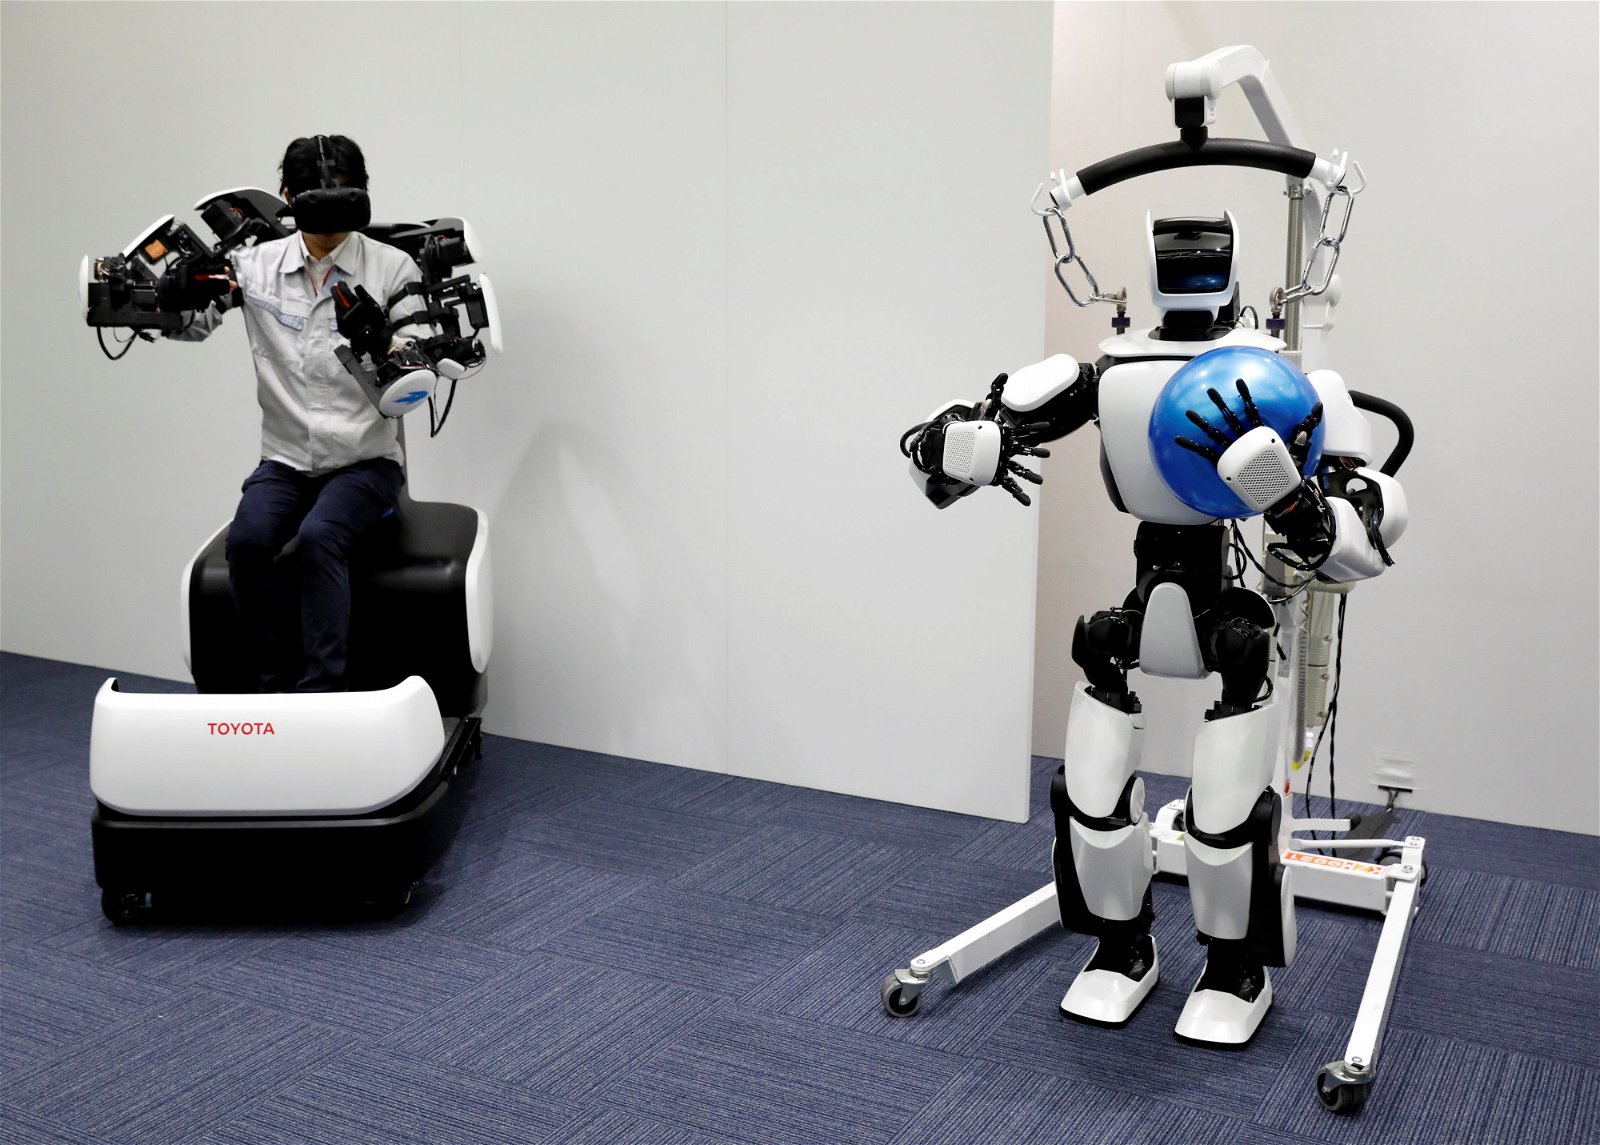 日本丰田汽车公司工作人员日前，在东京向外界展示了一款用于明年东京奥运会和残奥会的“T-HR3”的人形机器人。